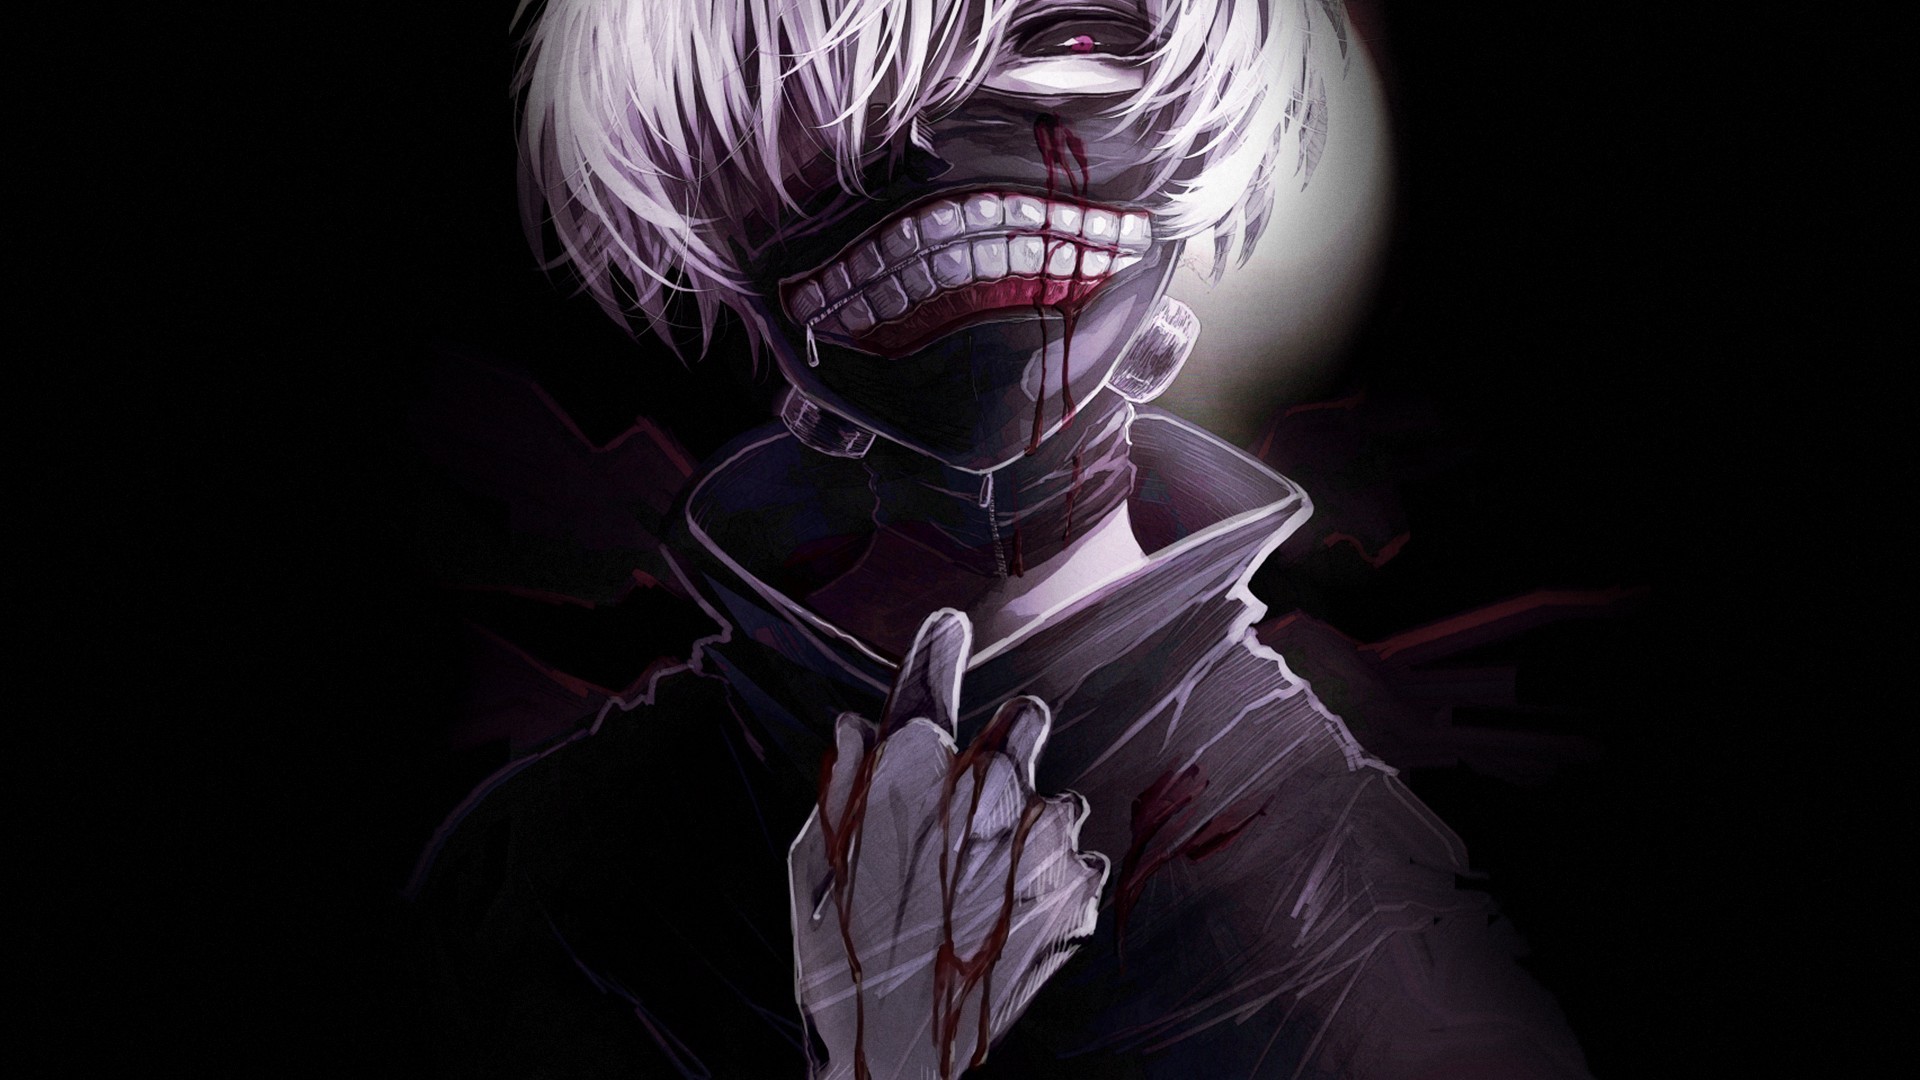 Image Tokyo Ghoul Blood teenage guy Kaneki Ken Anime 1920x1080